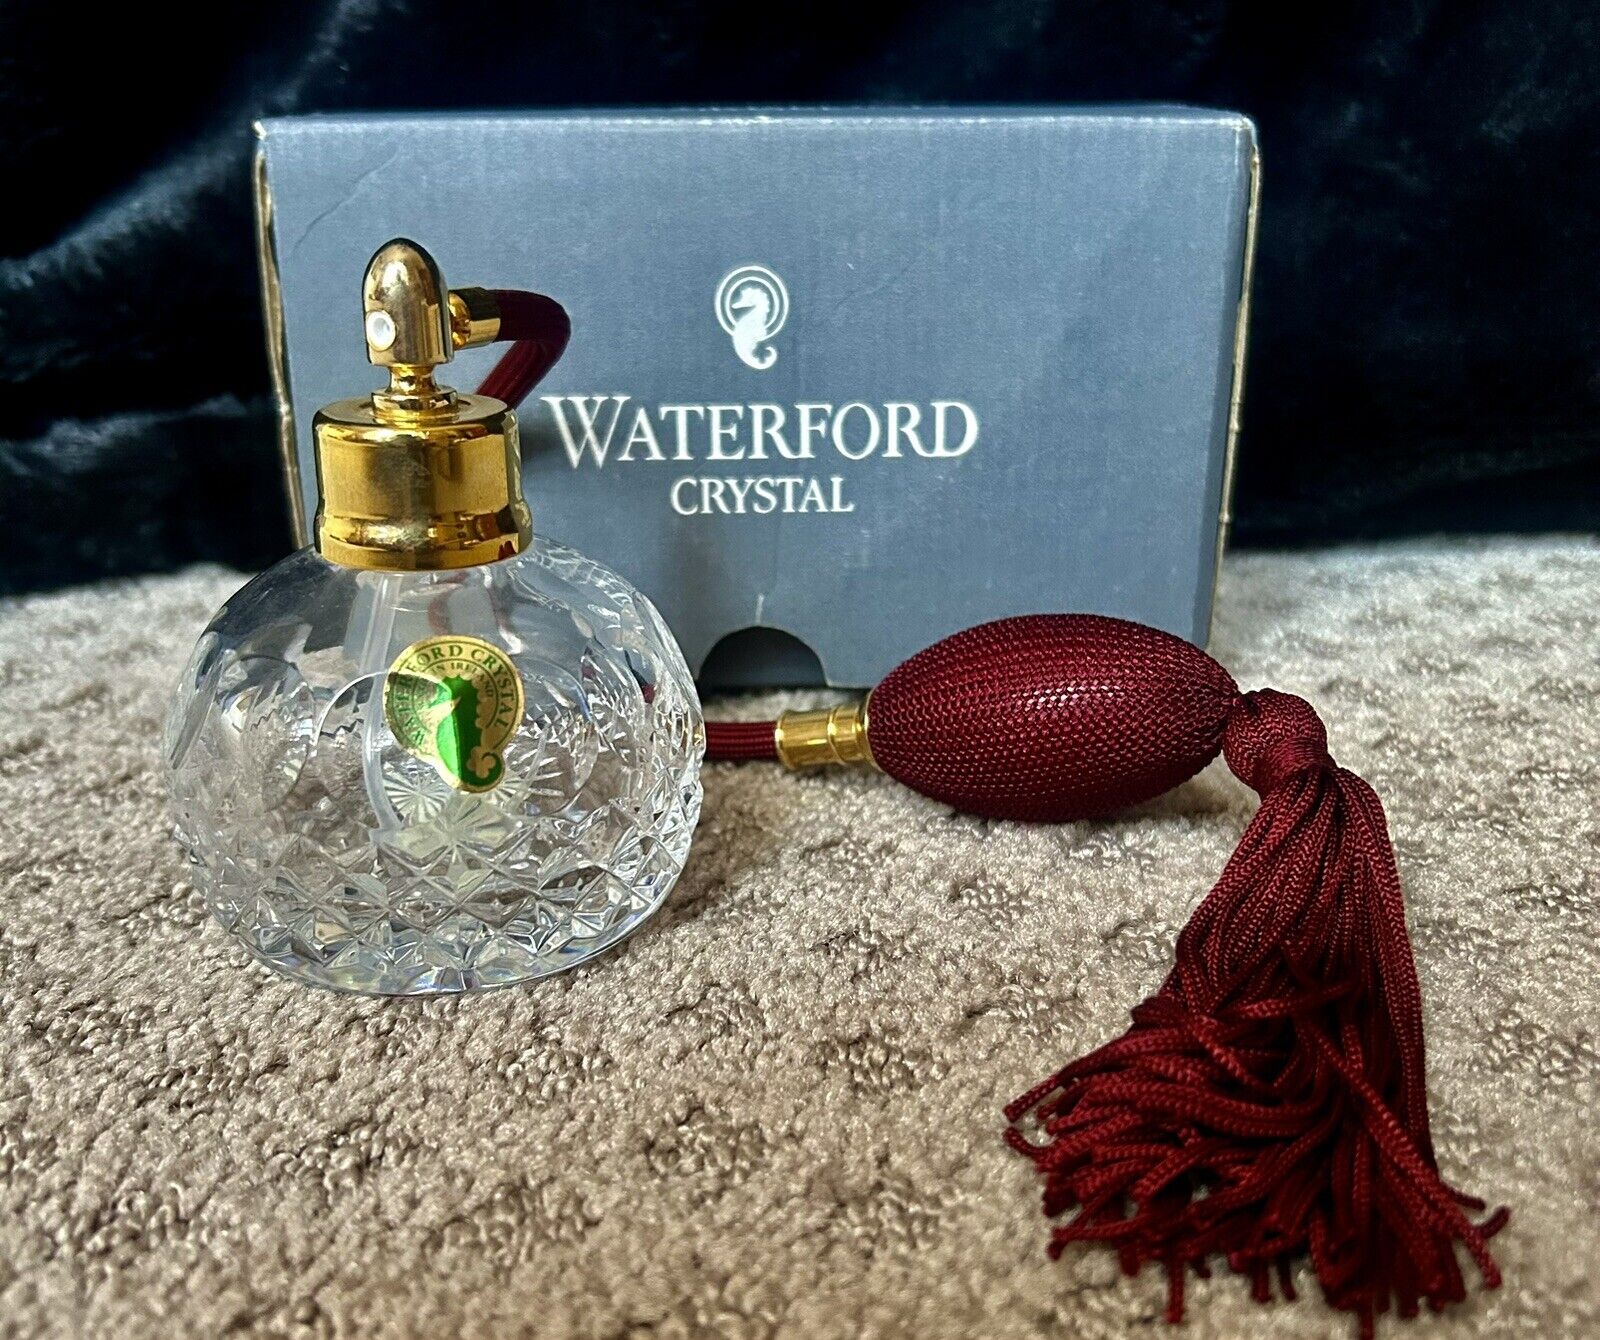 NEW Waterford Crystal Vintage Perfume Atomiser